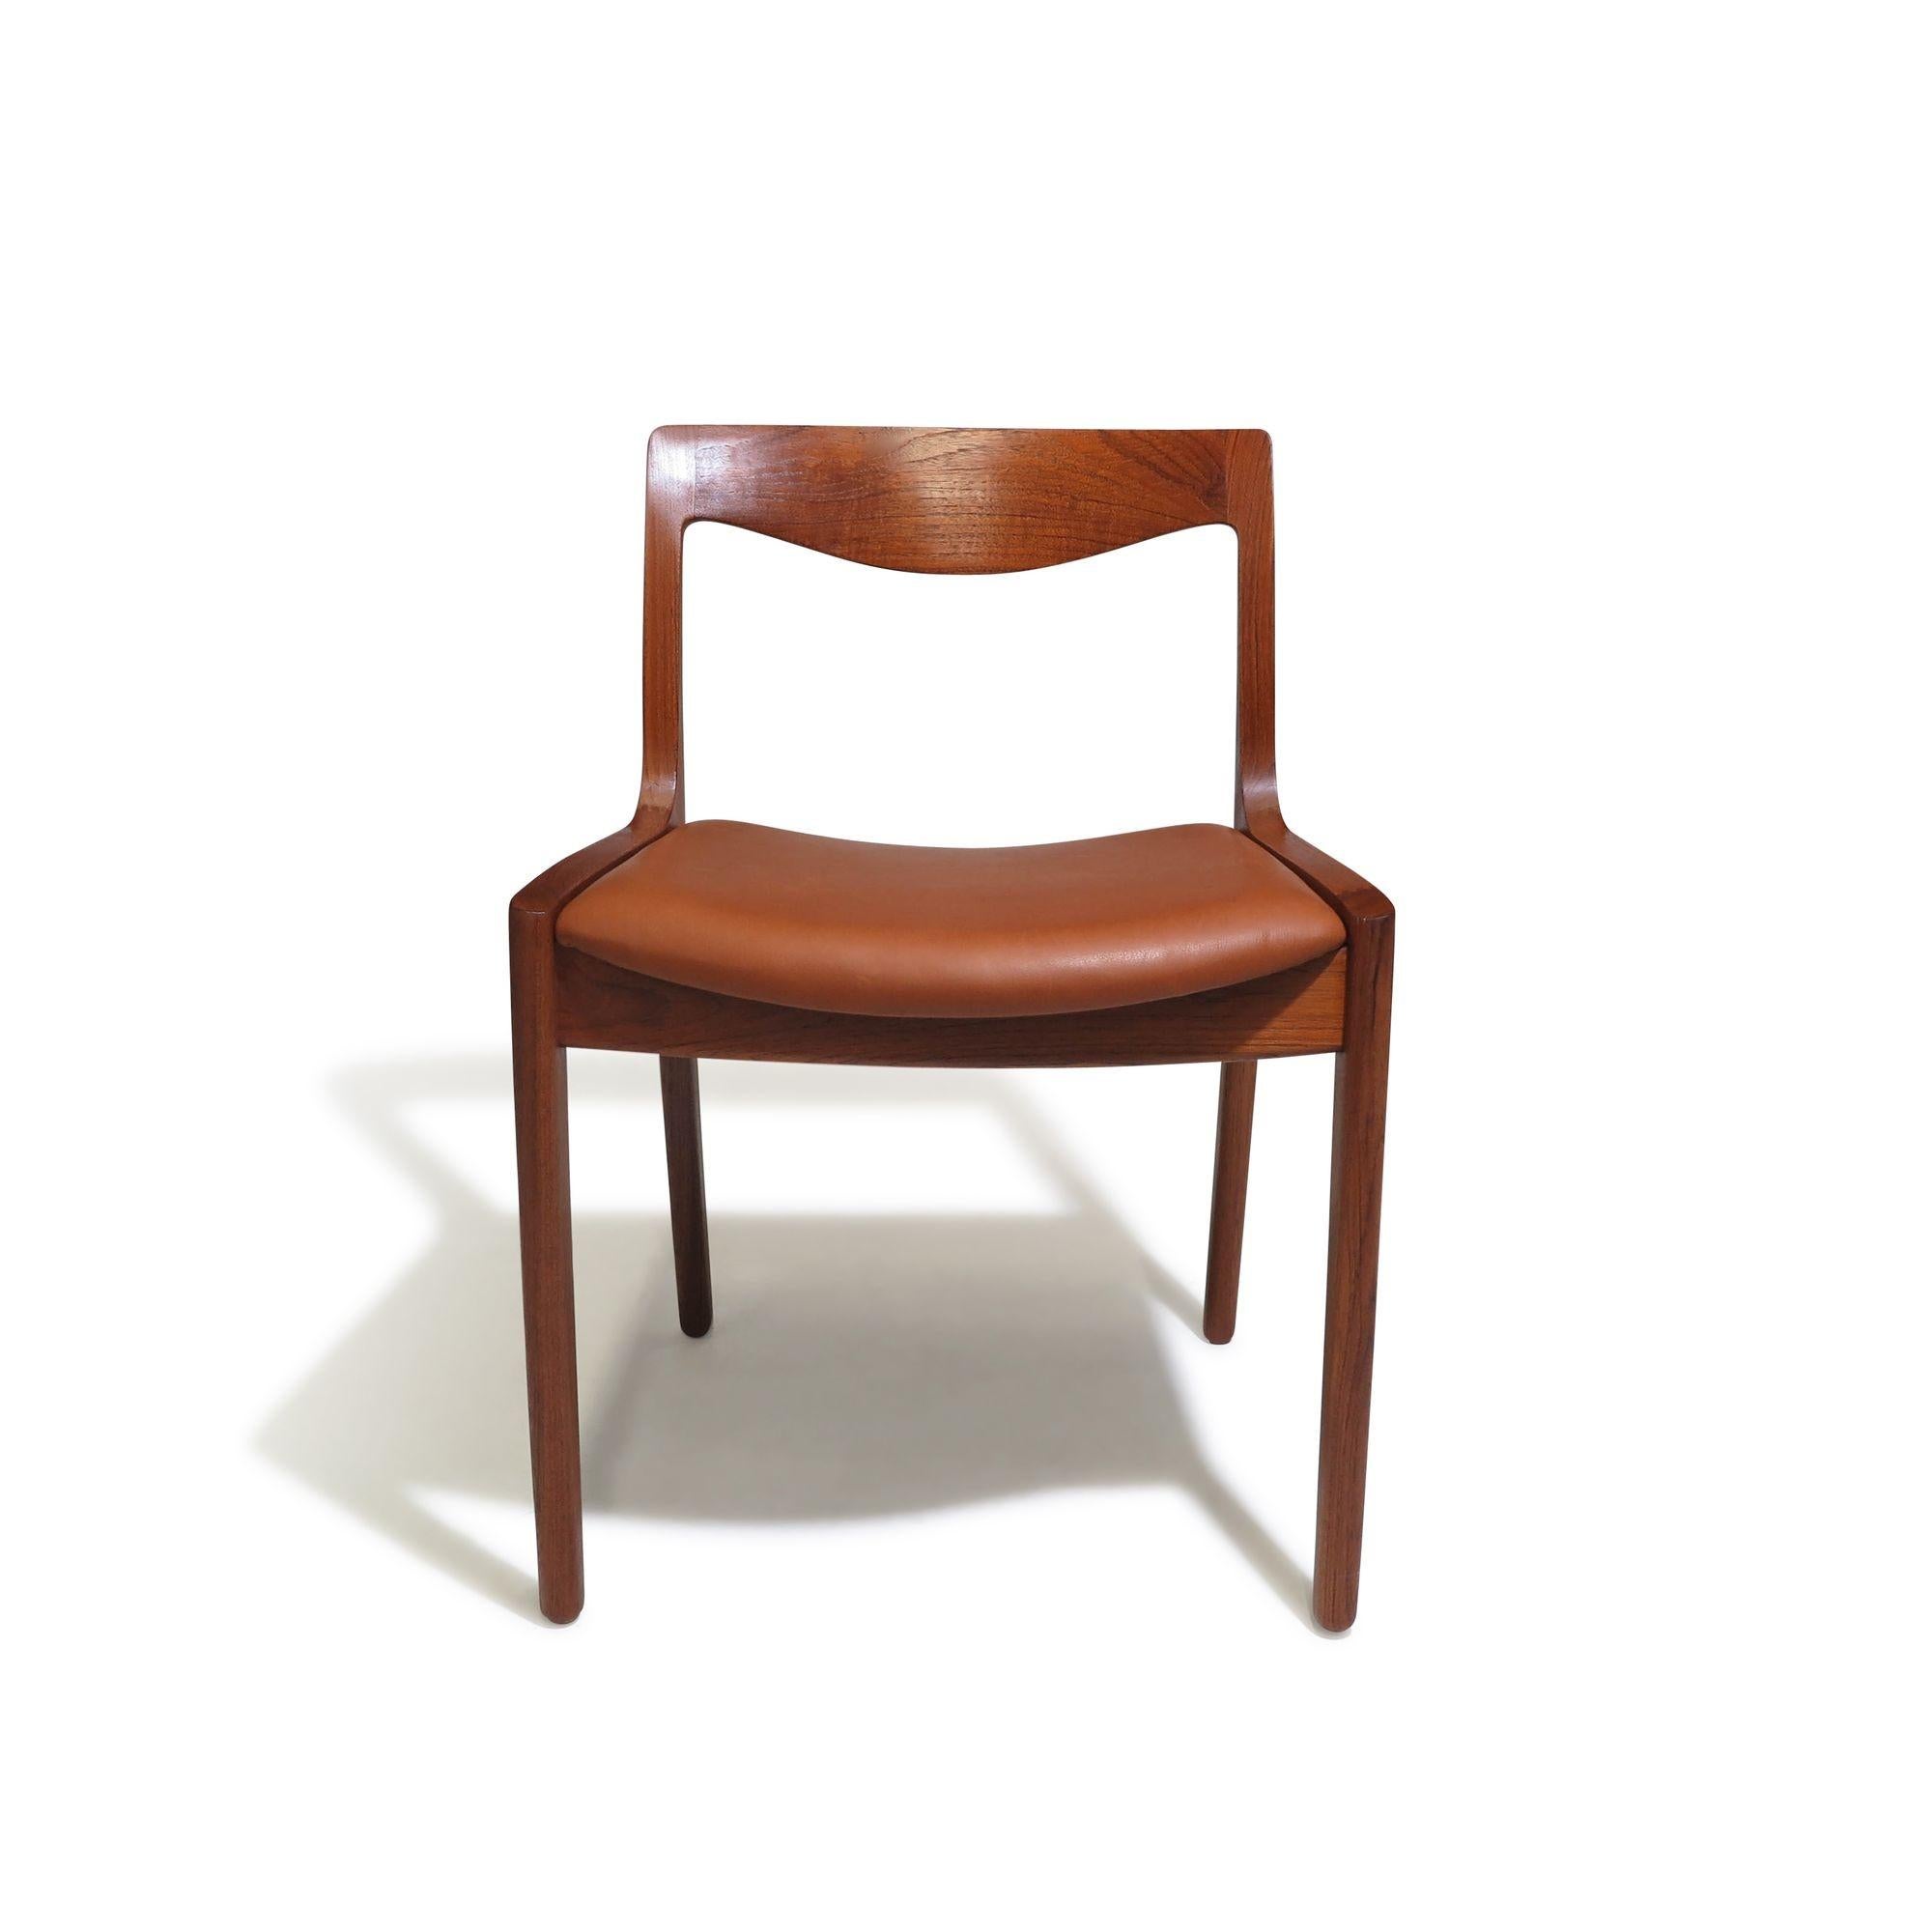 Danish Vilhelm Wohlert for Poul Jeppesen's Teak Dining Chairs For Sale